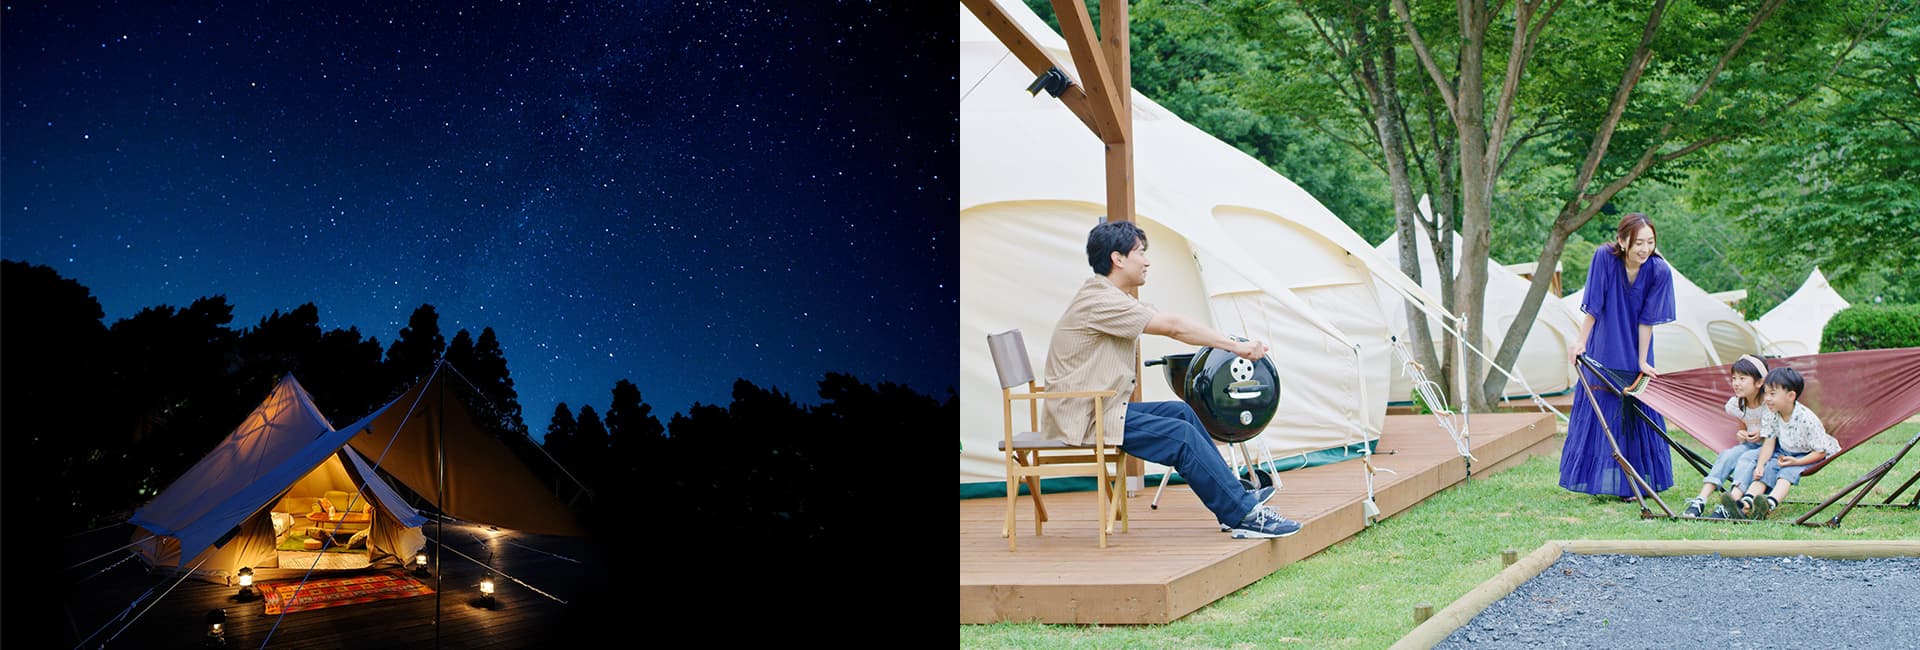 1_3 【関東・中部】キレイな星空をゆったり眺められるキャンプ場5選